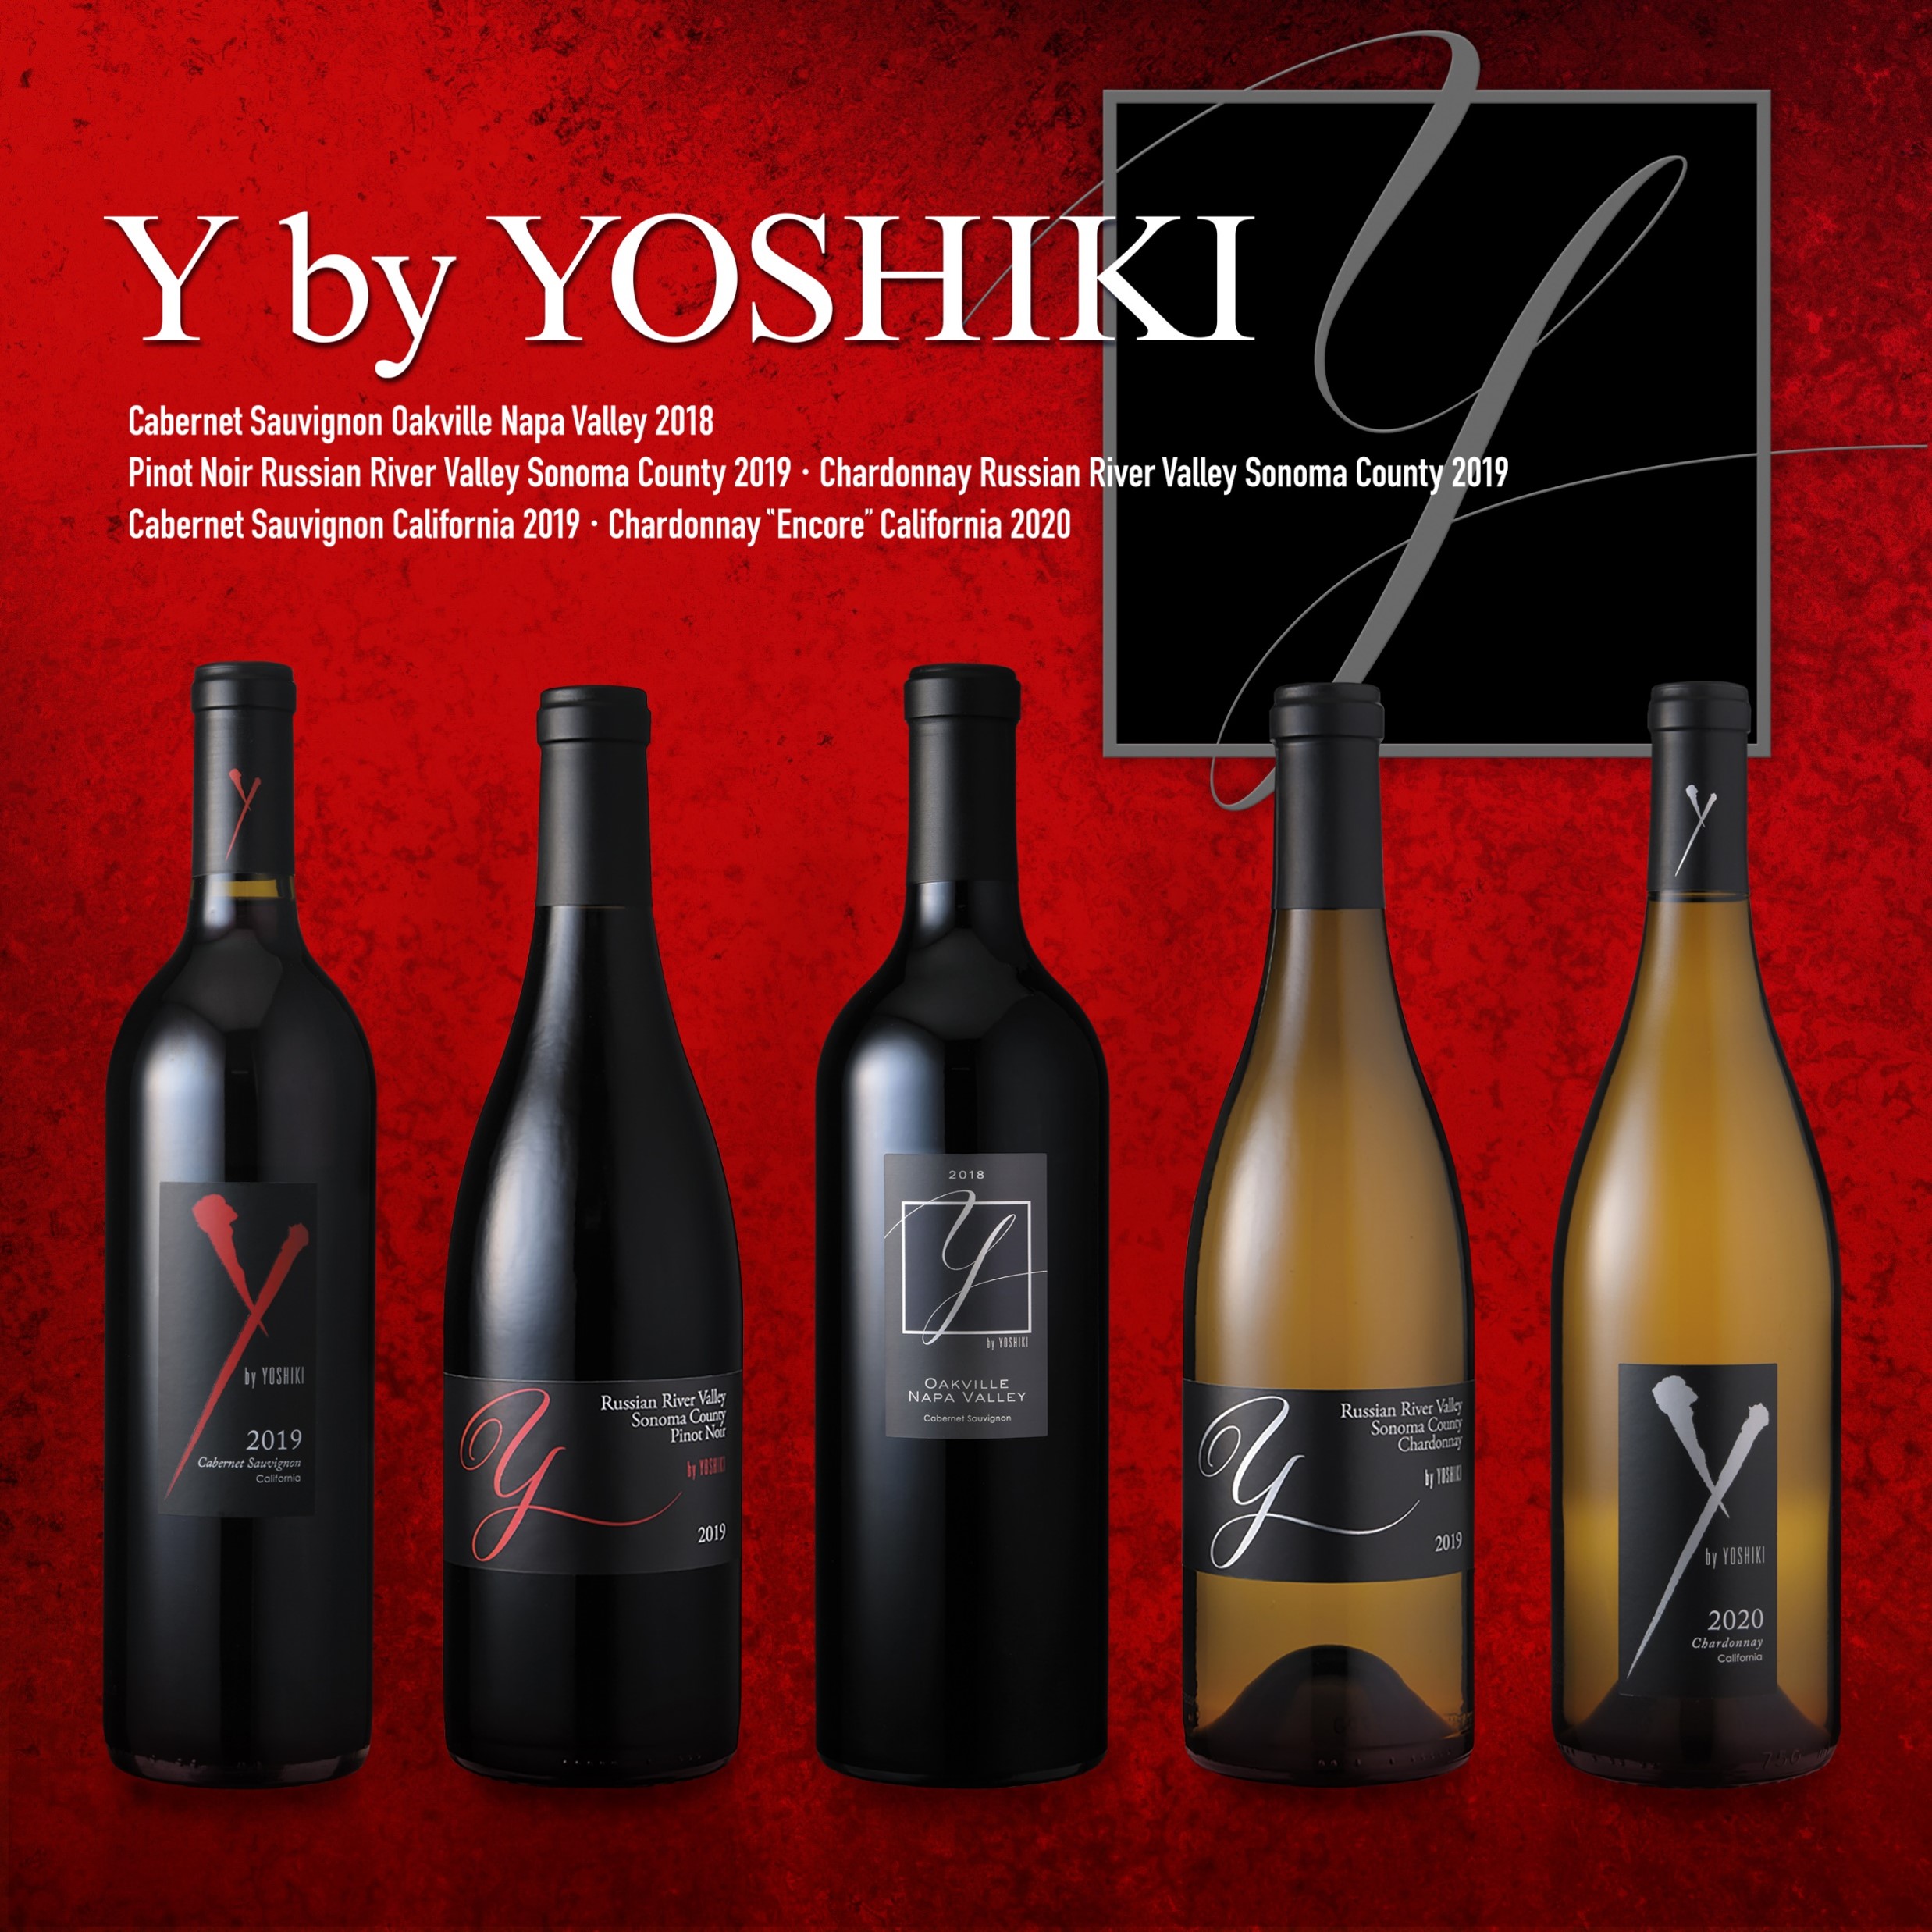 Y by YOSHIKI オークヴィル カベルネソーヴィニヨン 2016 - ワイン